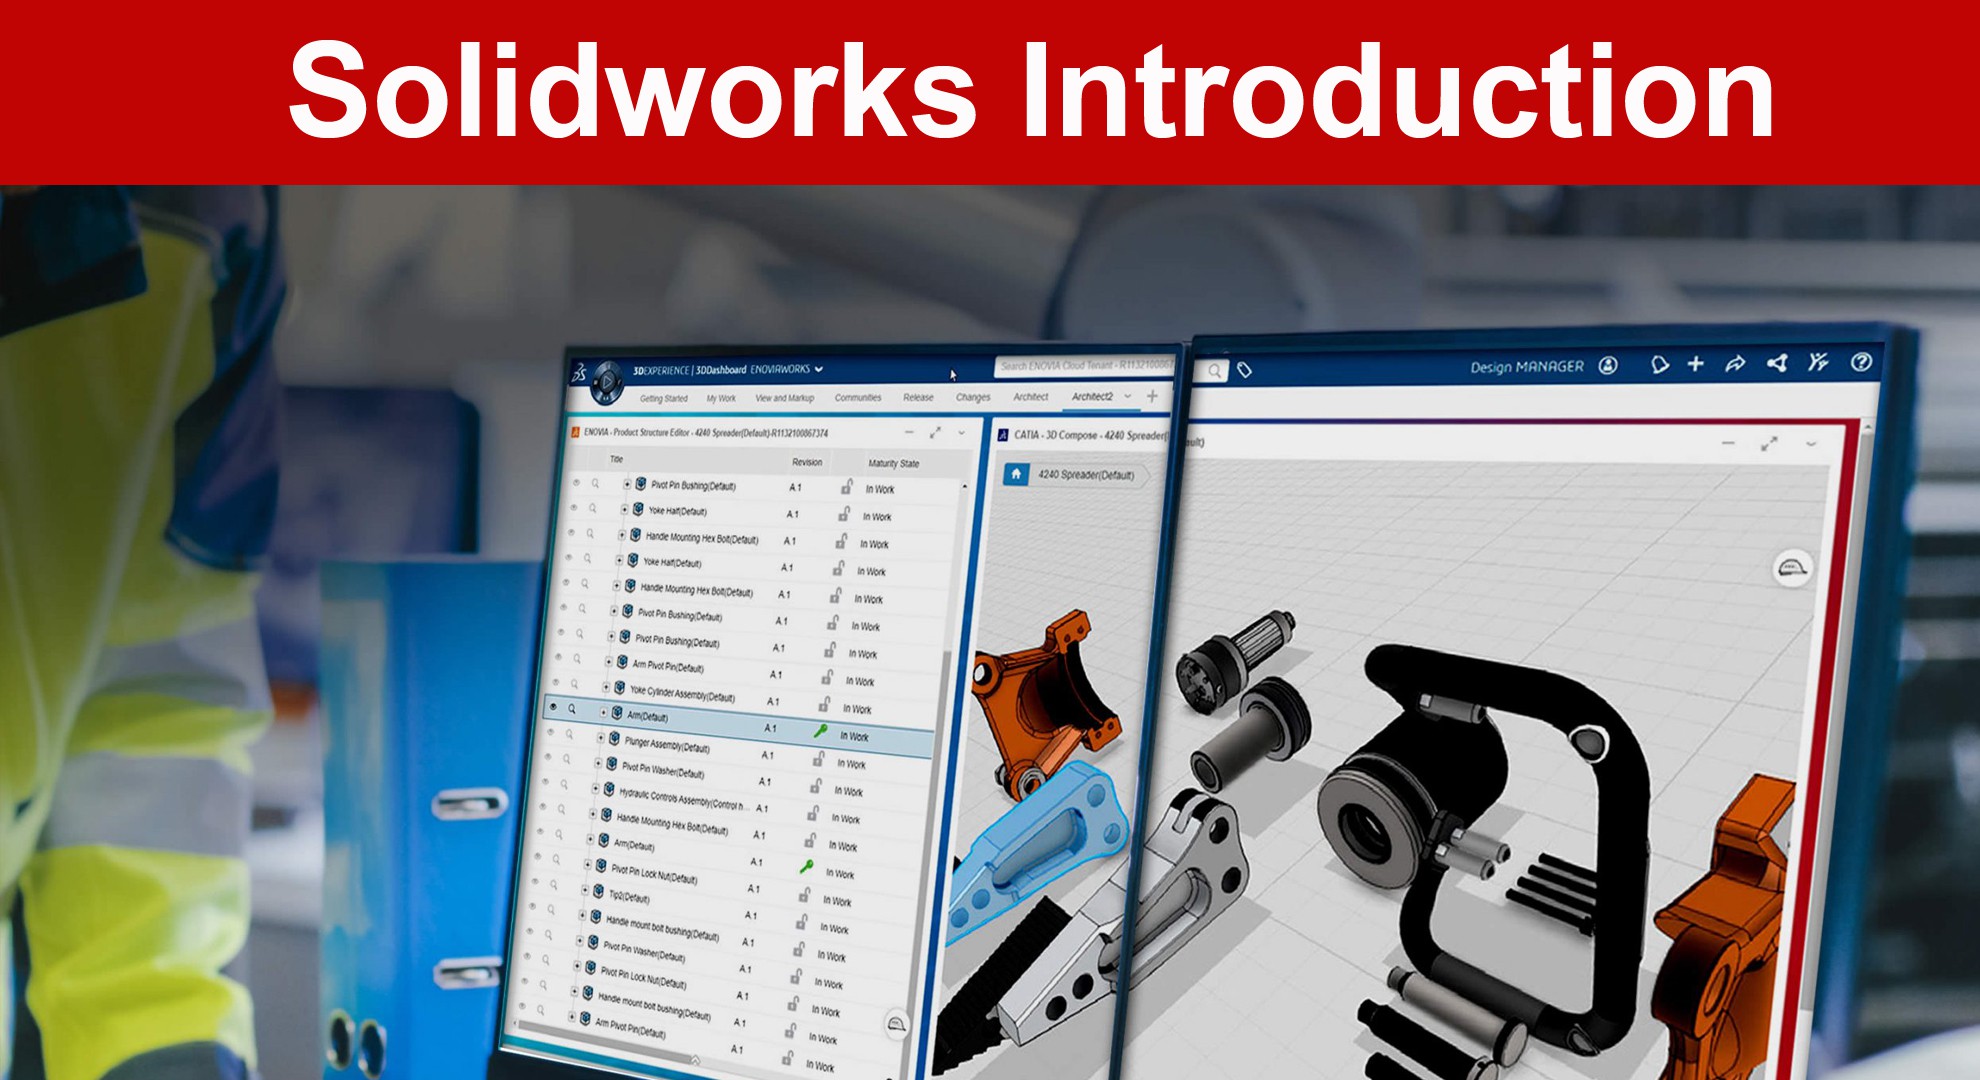 เรียนรู้การใช้งานและคำสั่งเบื้องต้นของโปรแกรม SolidWorks